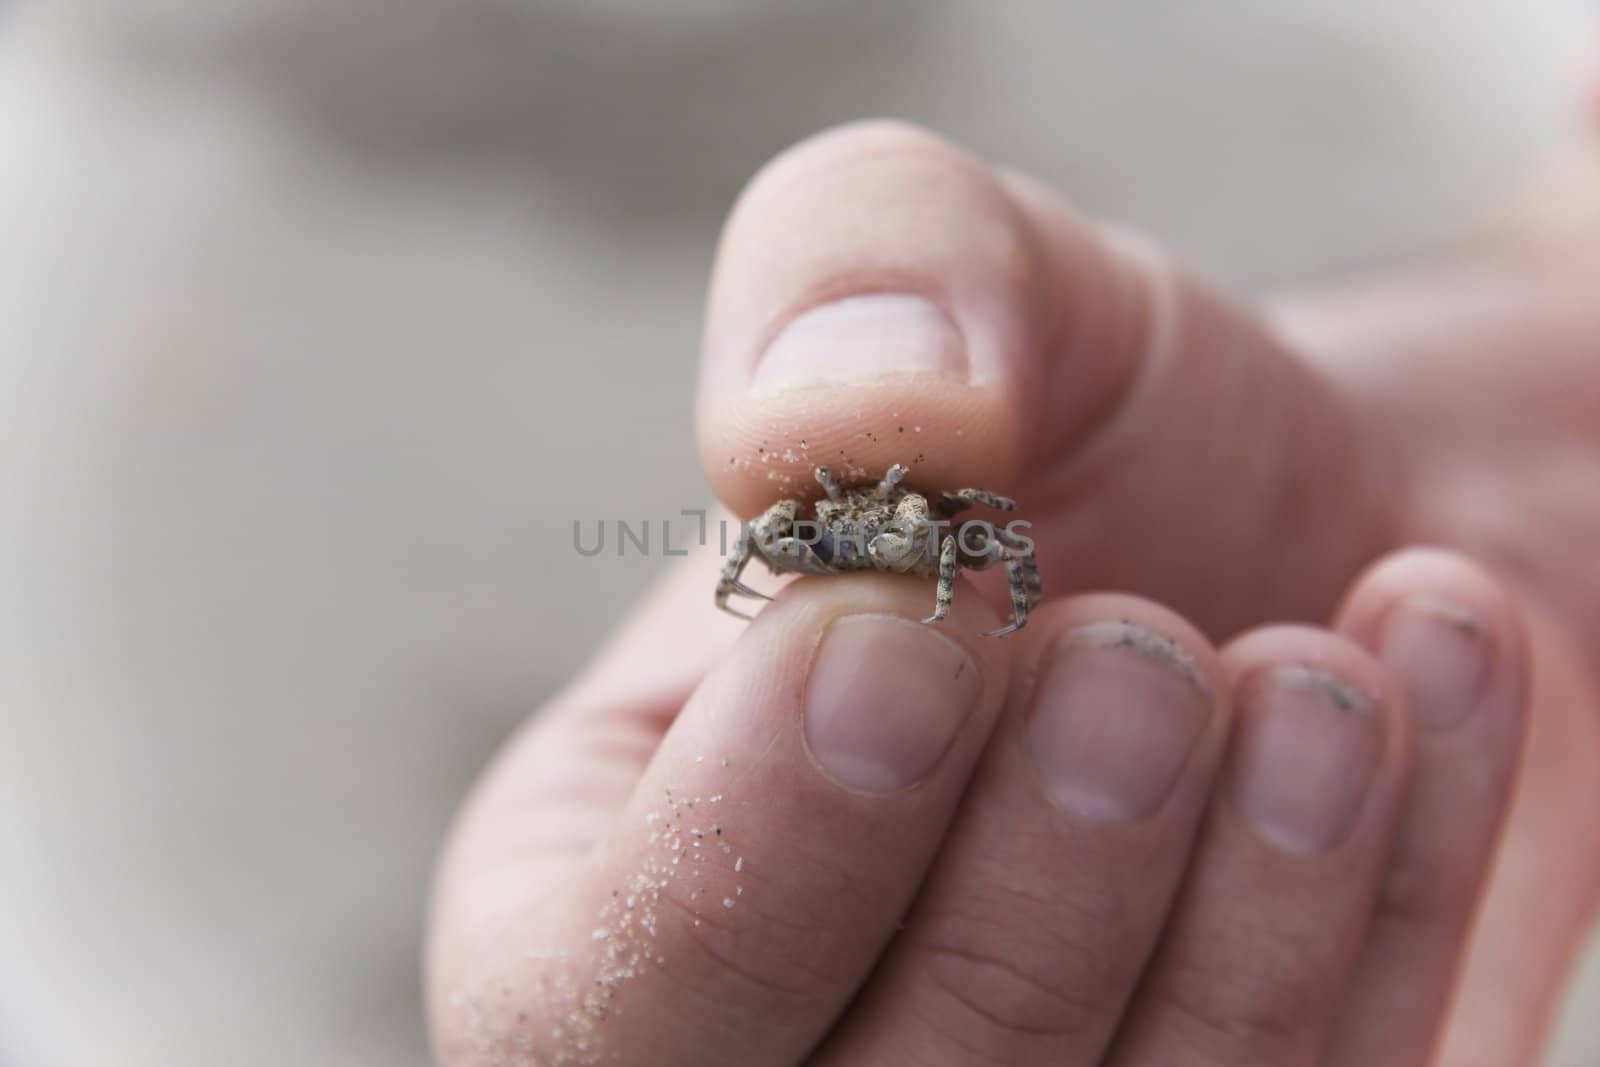 Tiny Crab by Meikey